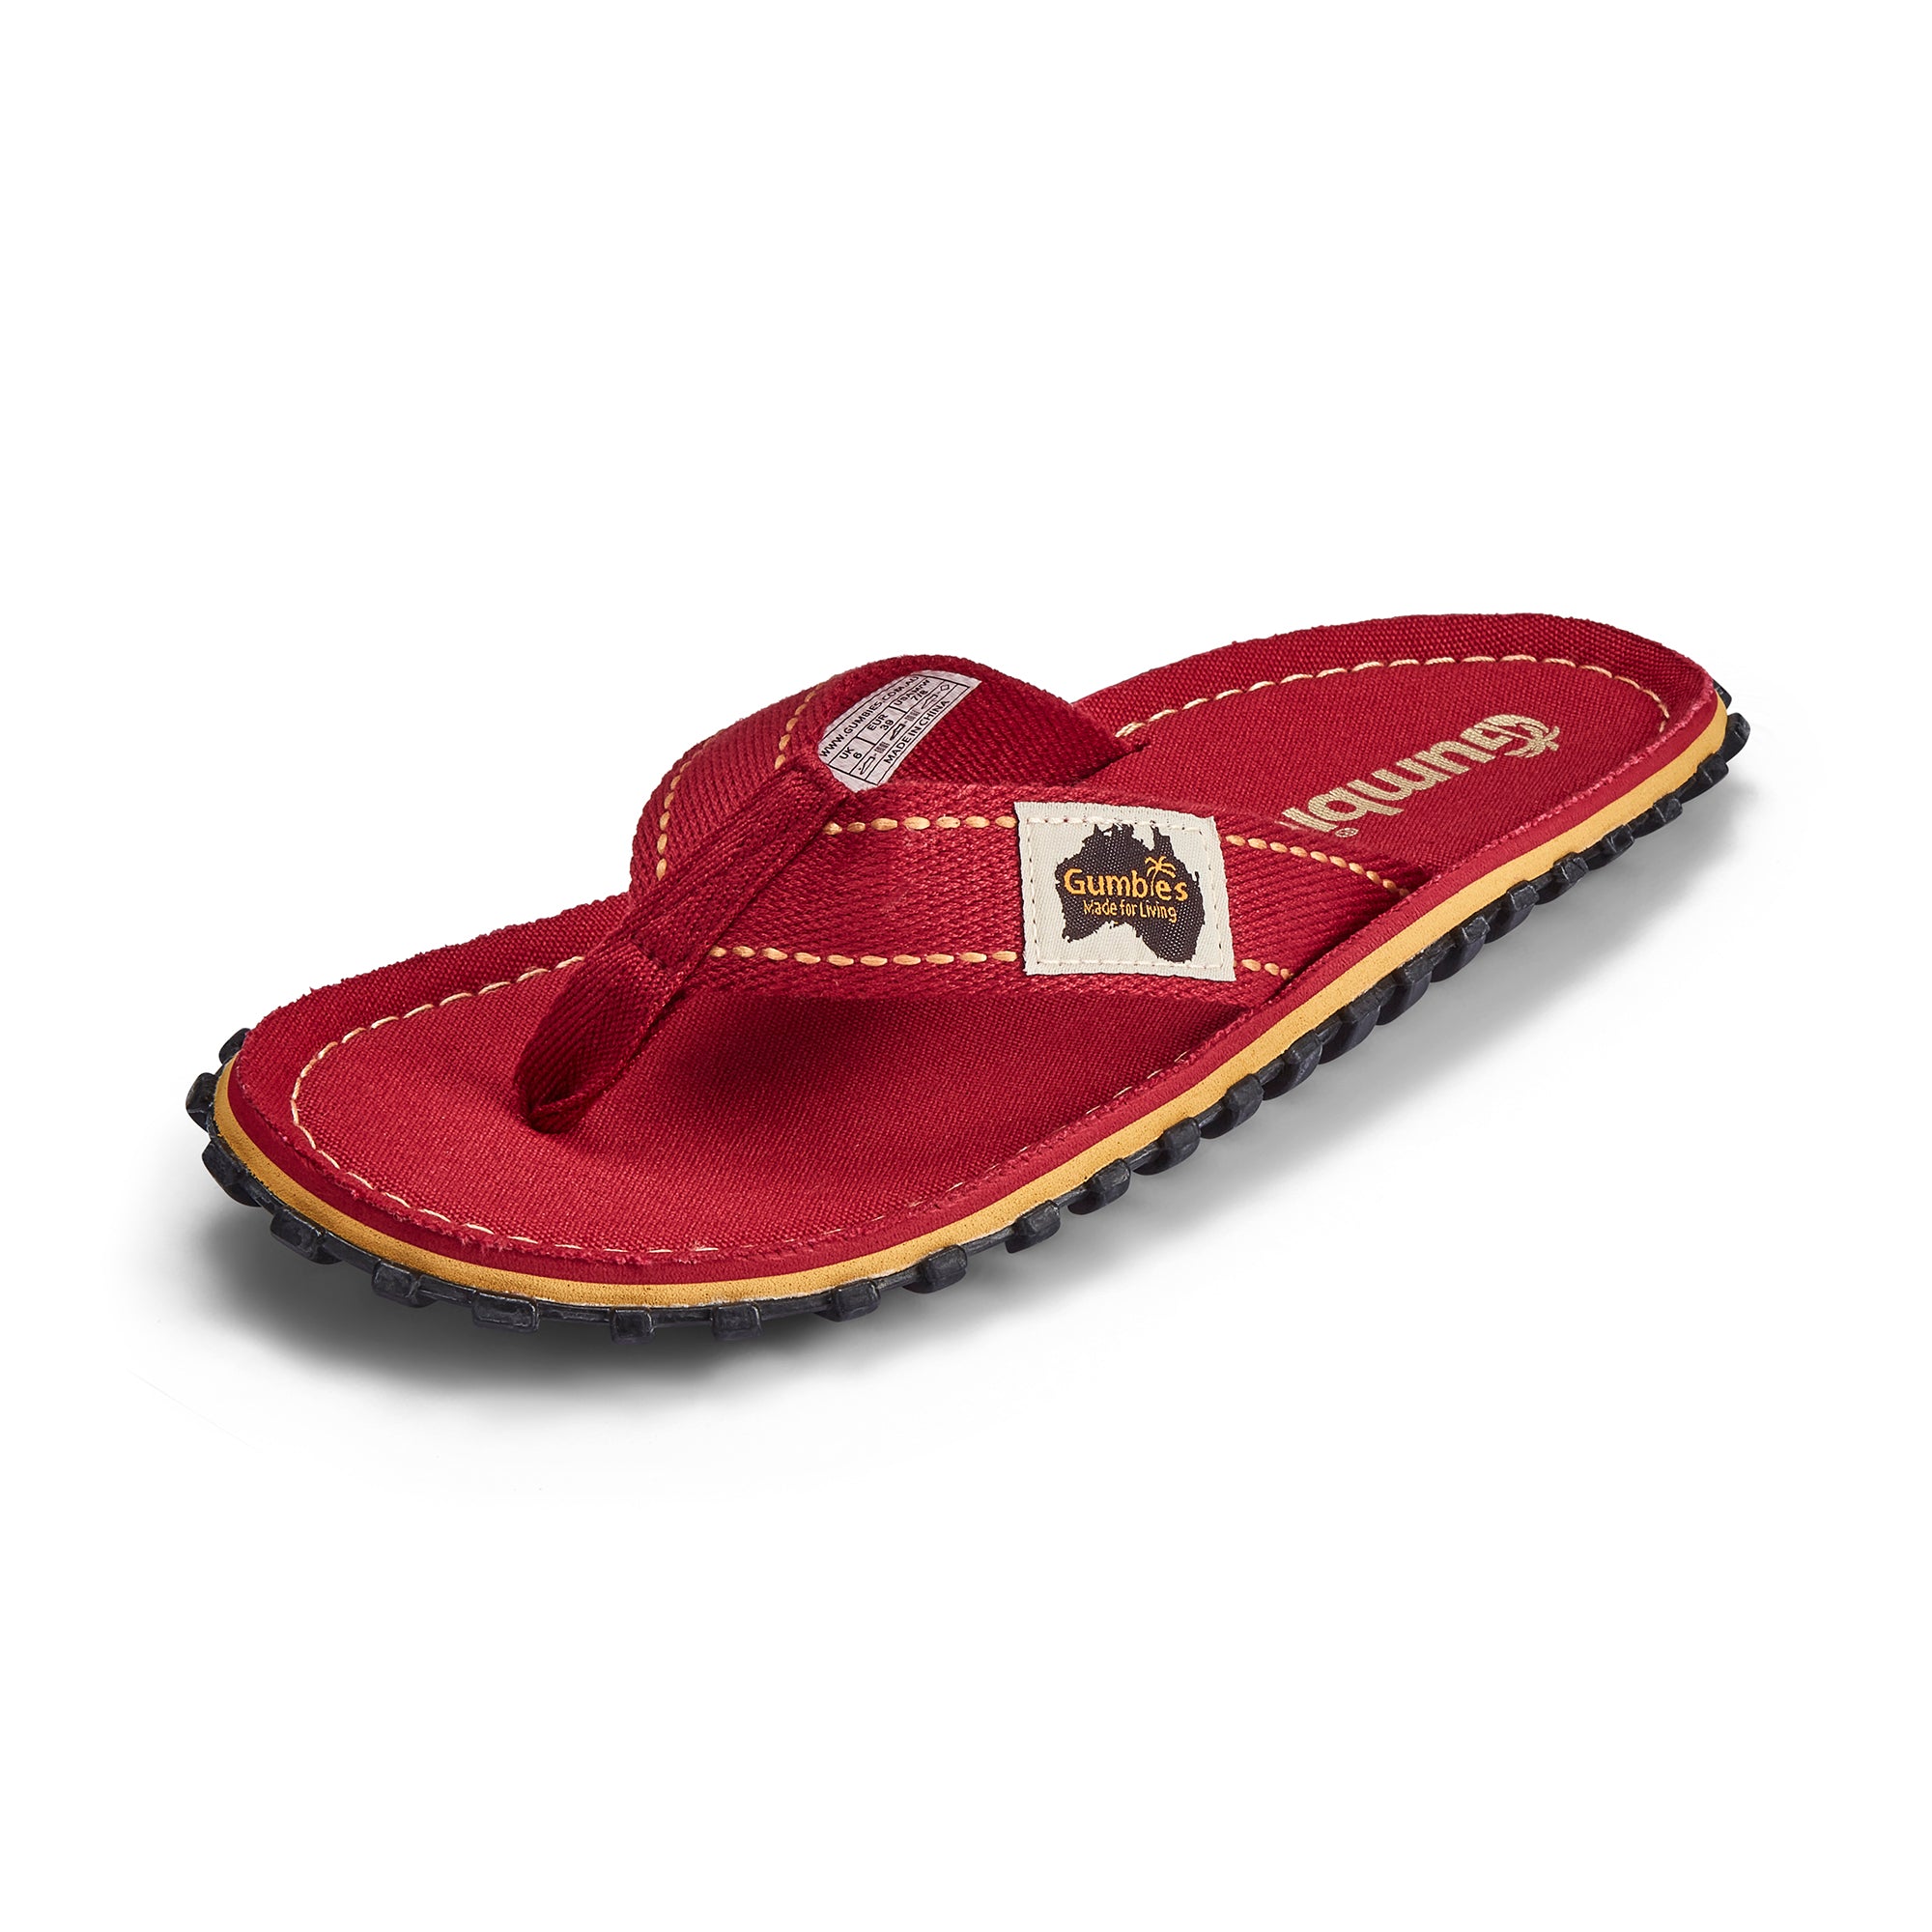 Islander Flip-Flops - Men's - Classic Red